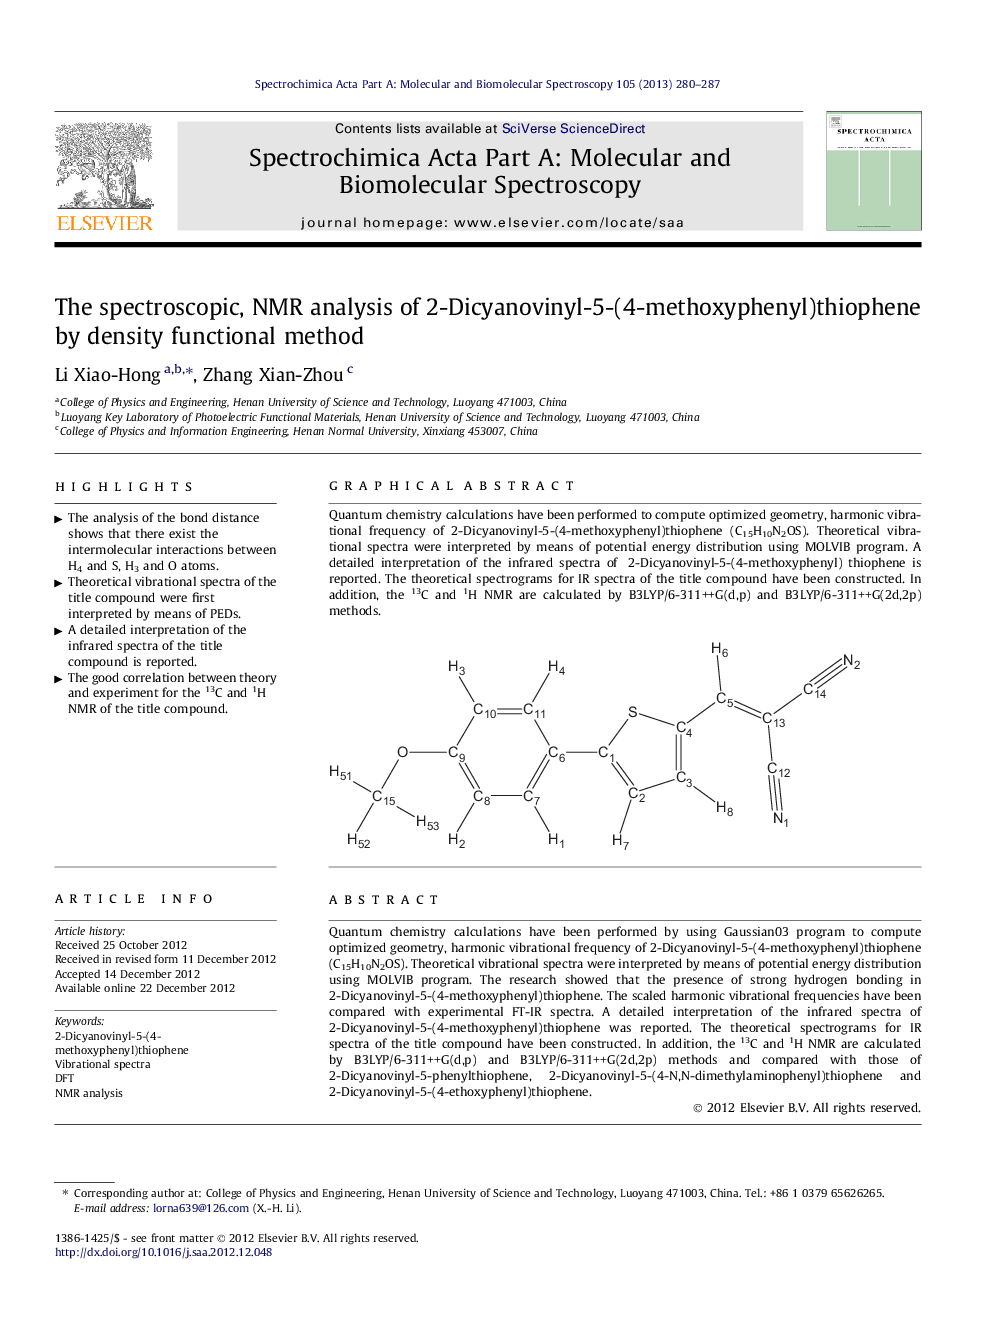 The spectroscopic, NMR analysis of 2-Dicyanovinyl-5-(4-methoxyphenyl)thiophene by density functional method